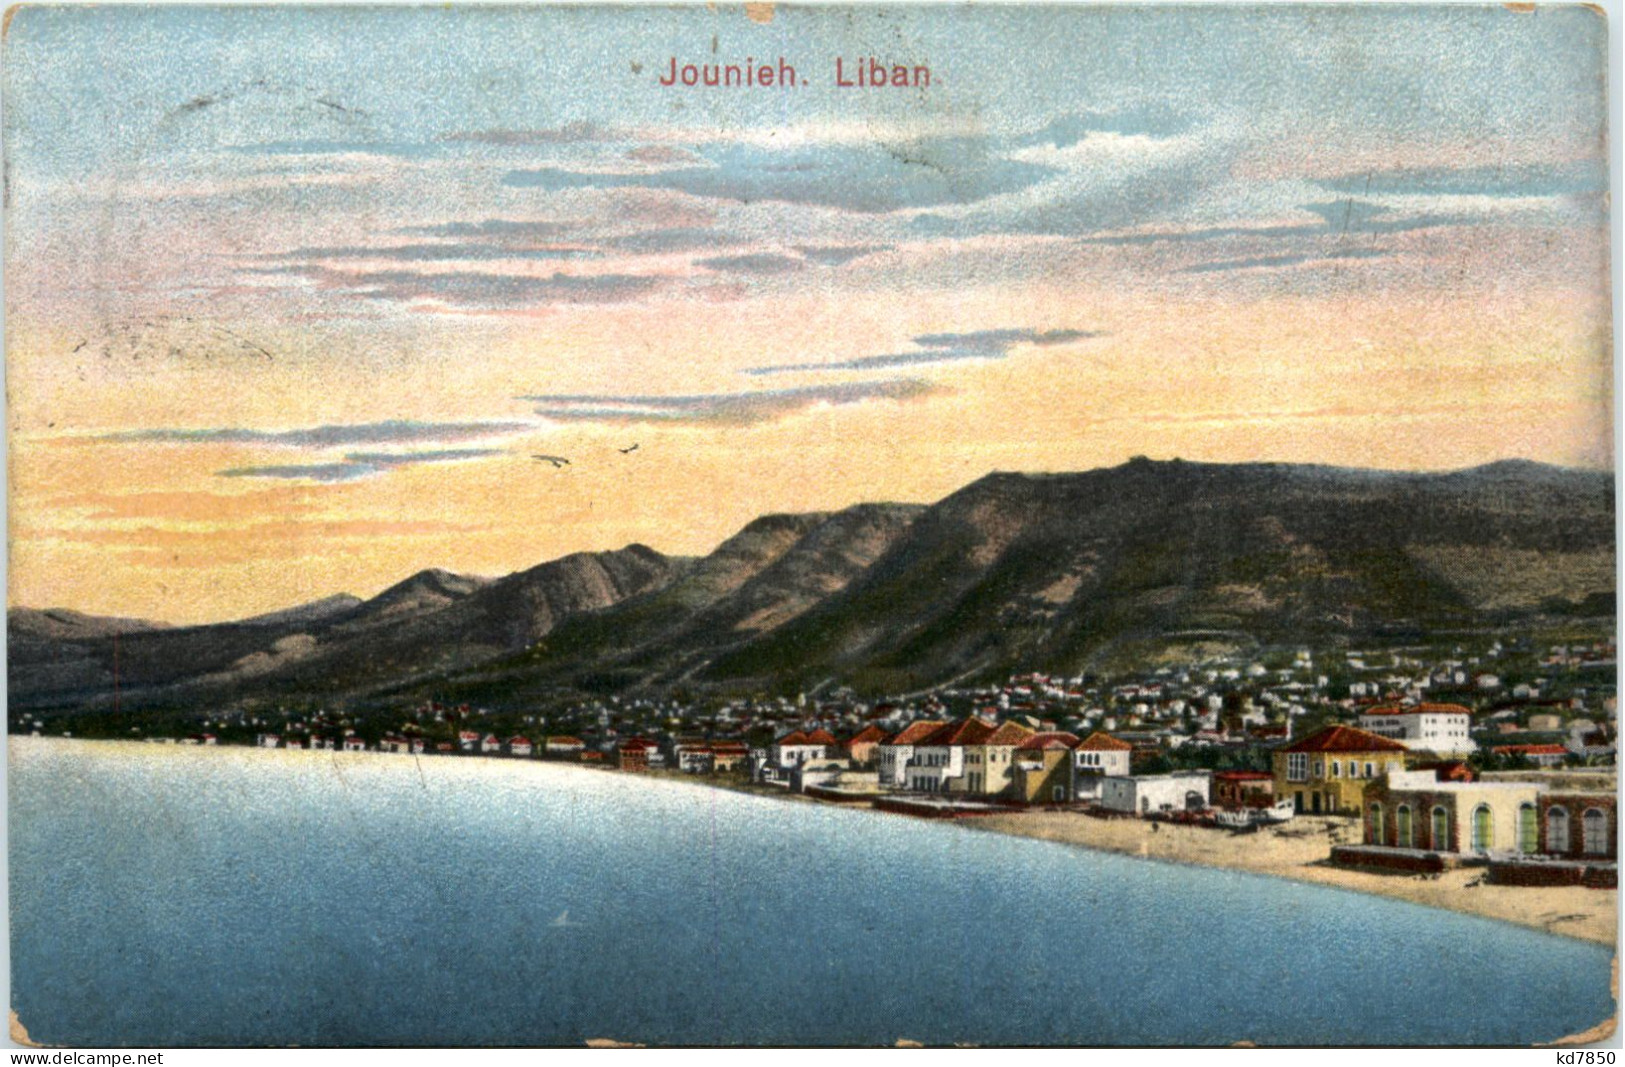 Liban - Jounieh - Libano